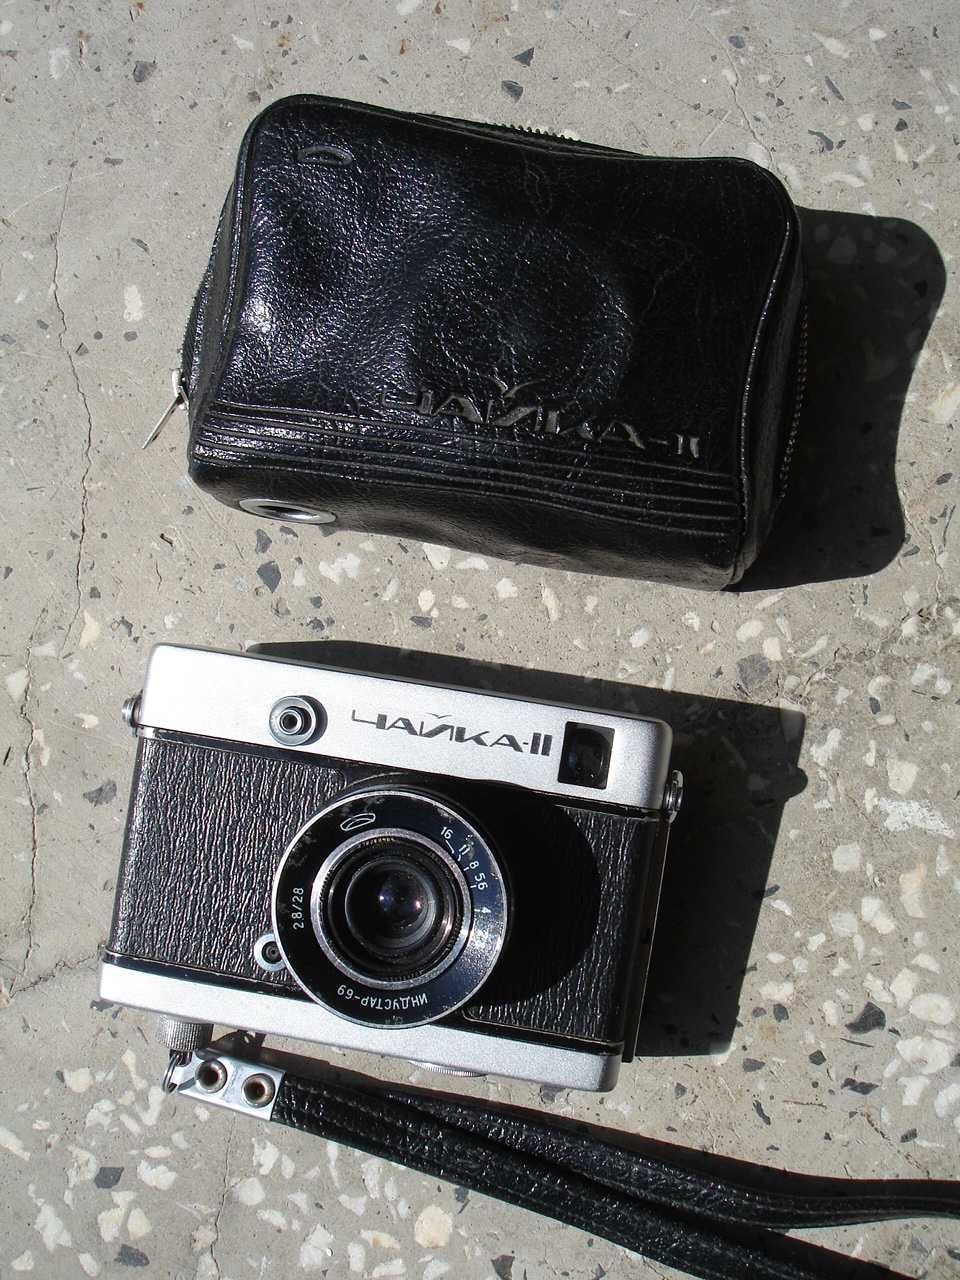 Чайка 2 - класически руски фотоапарат, произведен в СССР